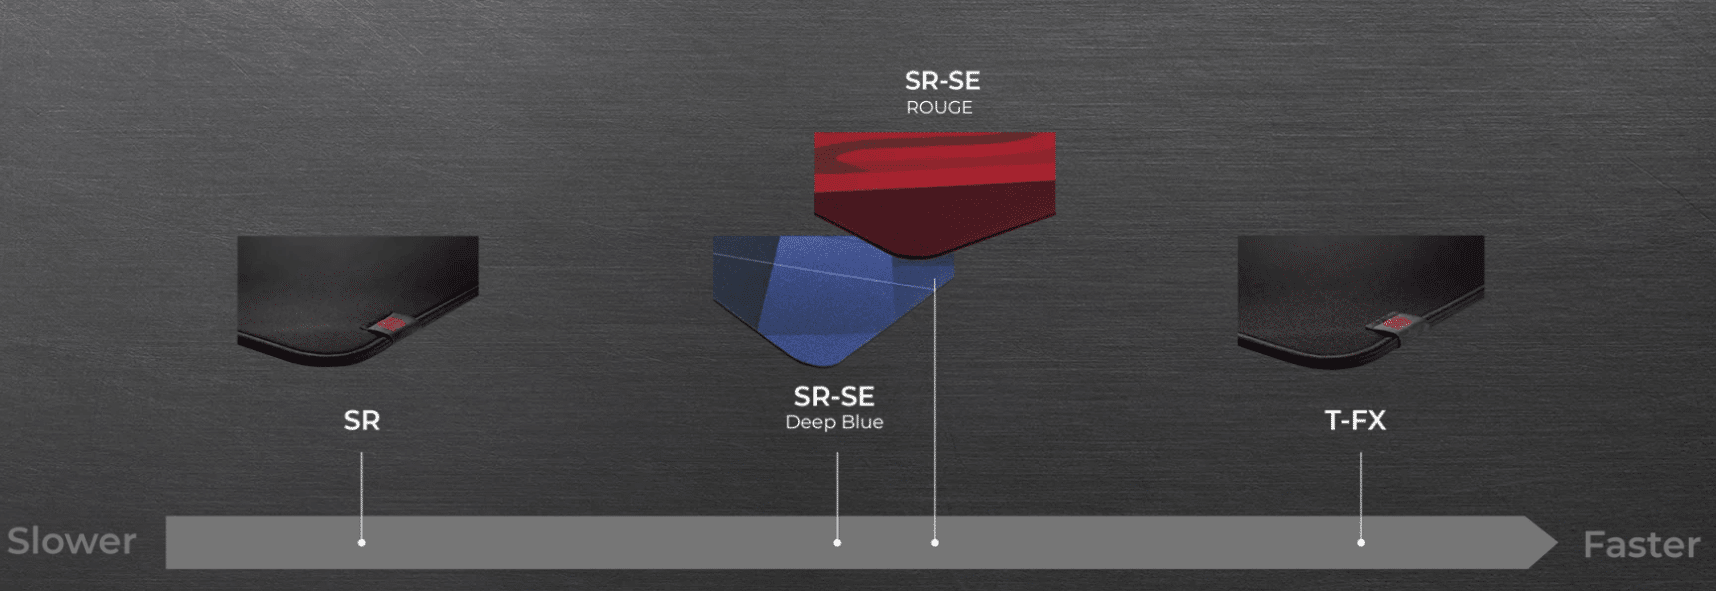 G-SR-SE rouge】高性能なバランスタイプマウスパッド「マウスパッド ...